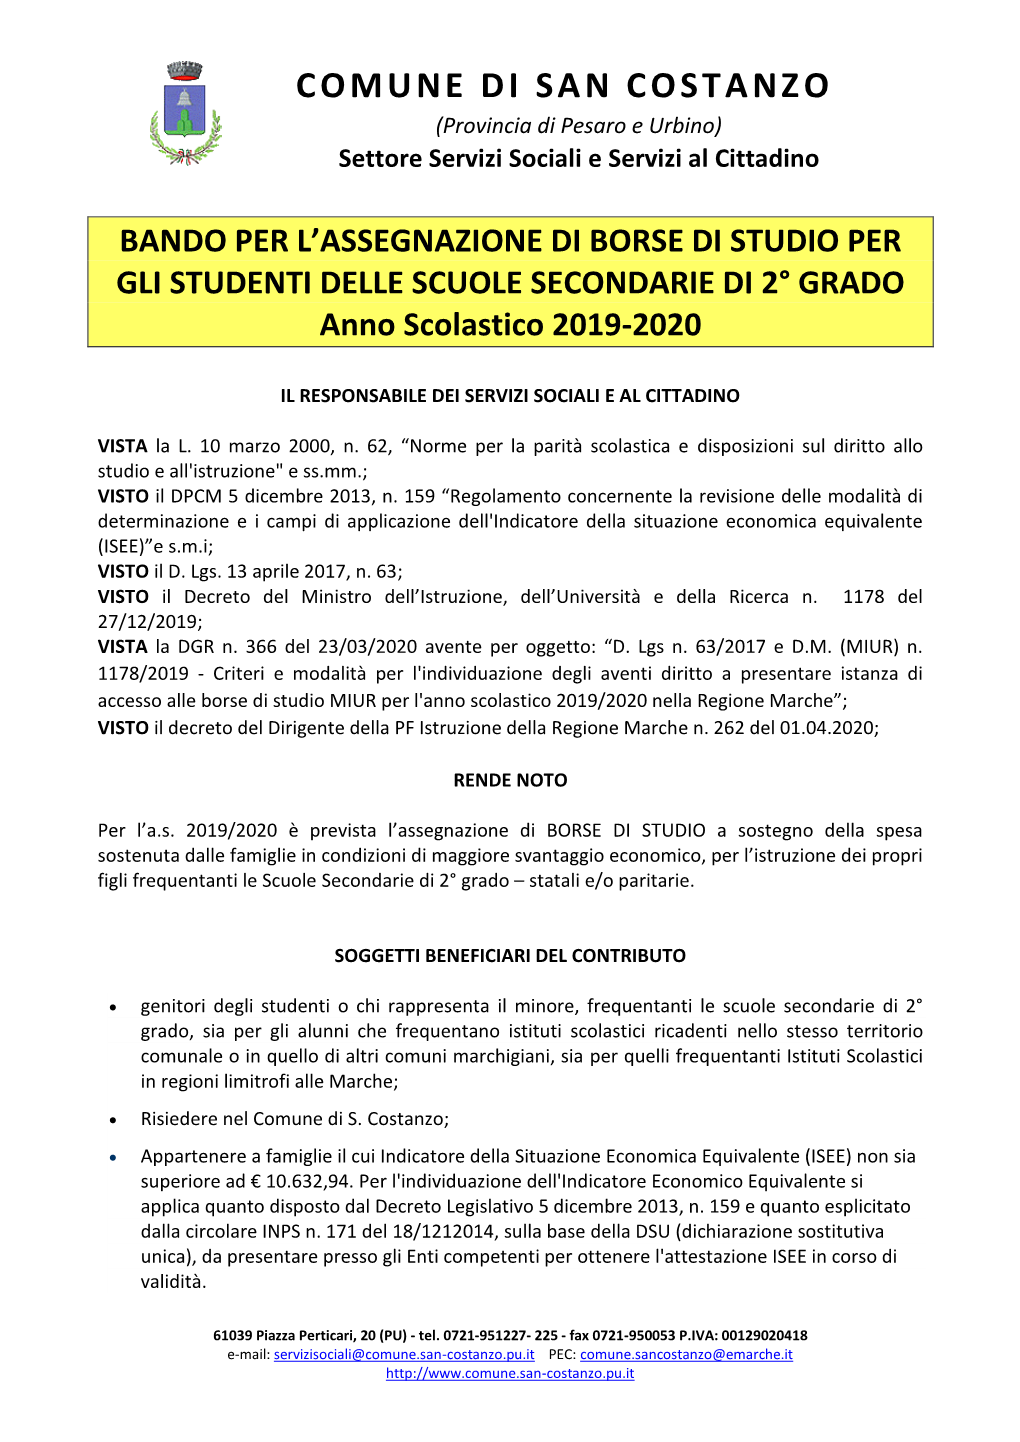 COMUNE DI SAN COSTANZO (Provincia Di Pesaro E Urbino) Settore Servizi Sociali E Servizi Al Cittadino